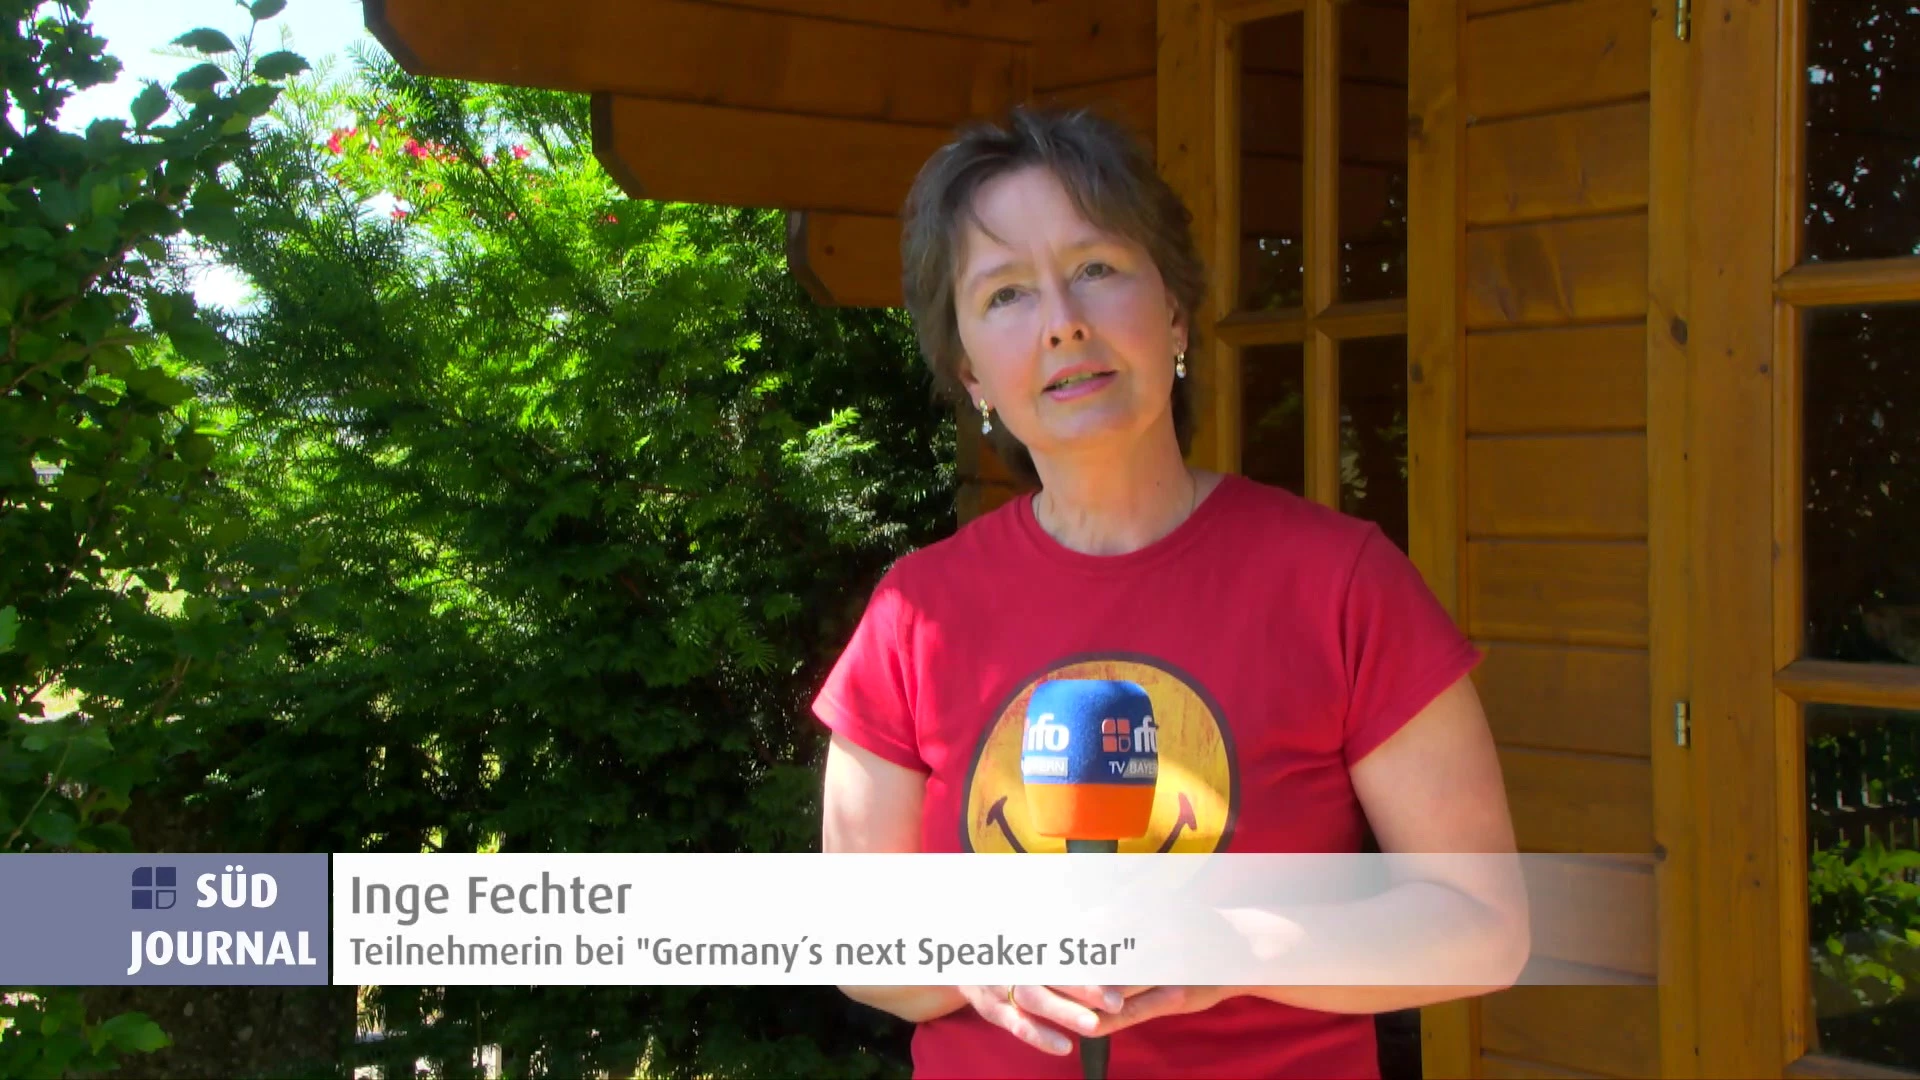 Rosenheimerin bei Germanys next Speaker Star rfo